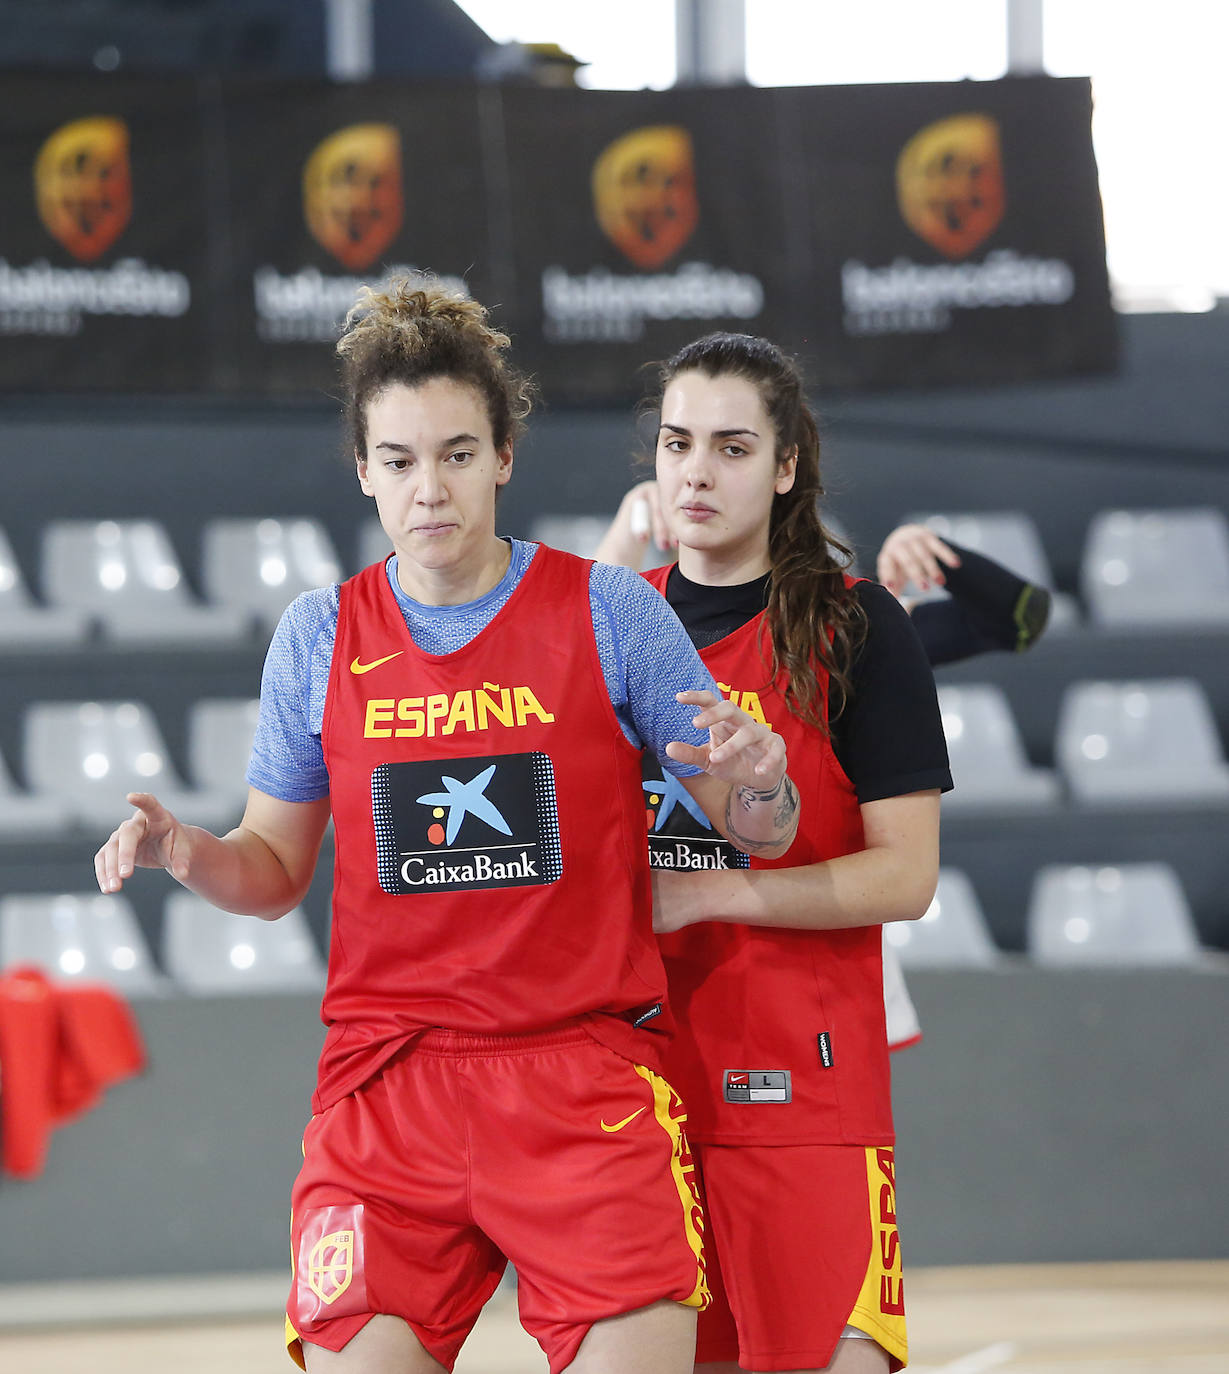 La Selección femenina de baloncesto entrena en el pabellón de deportes.